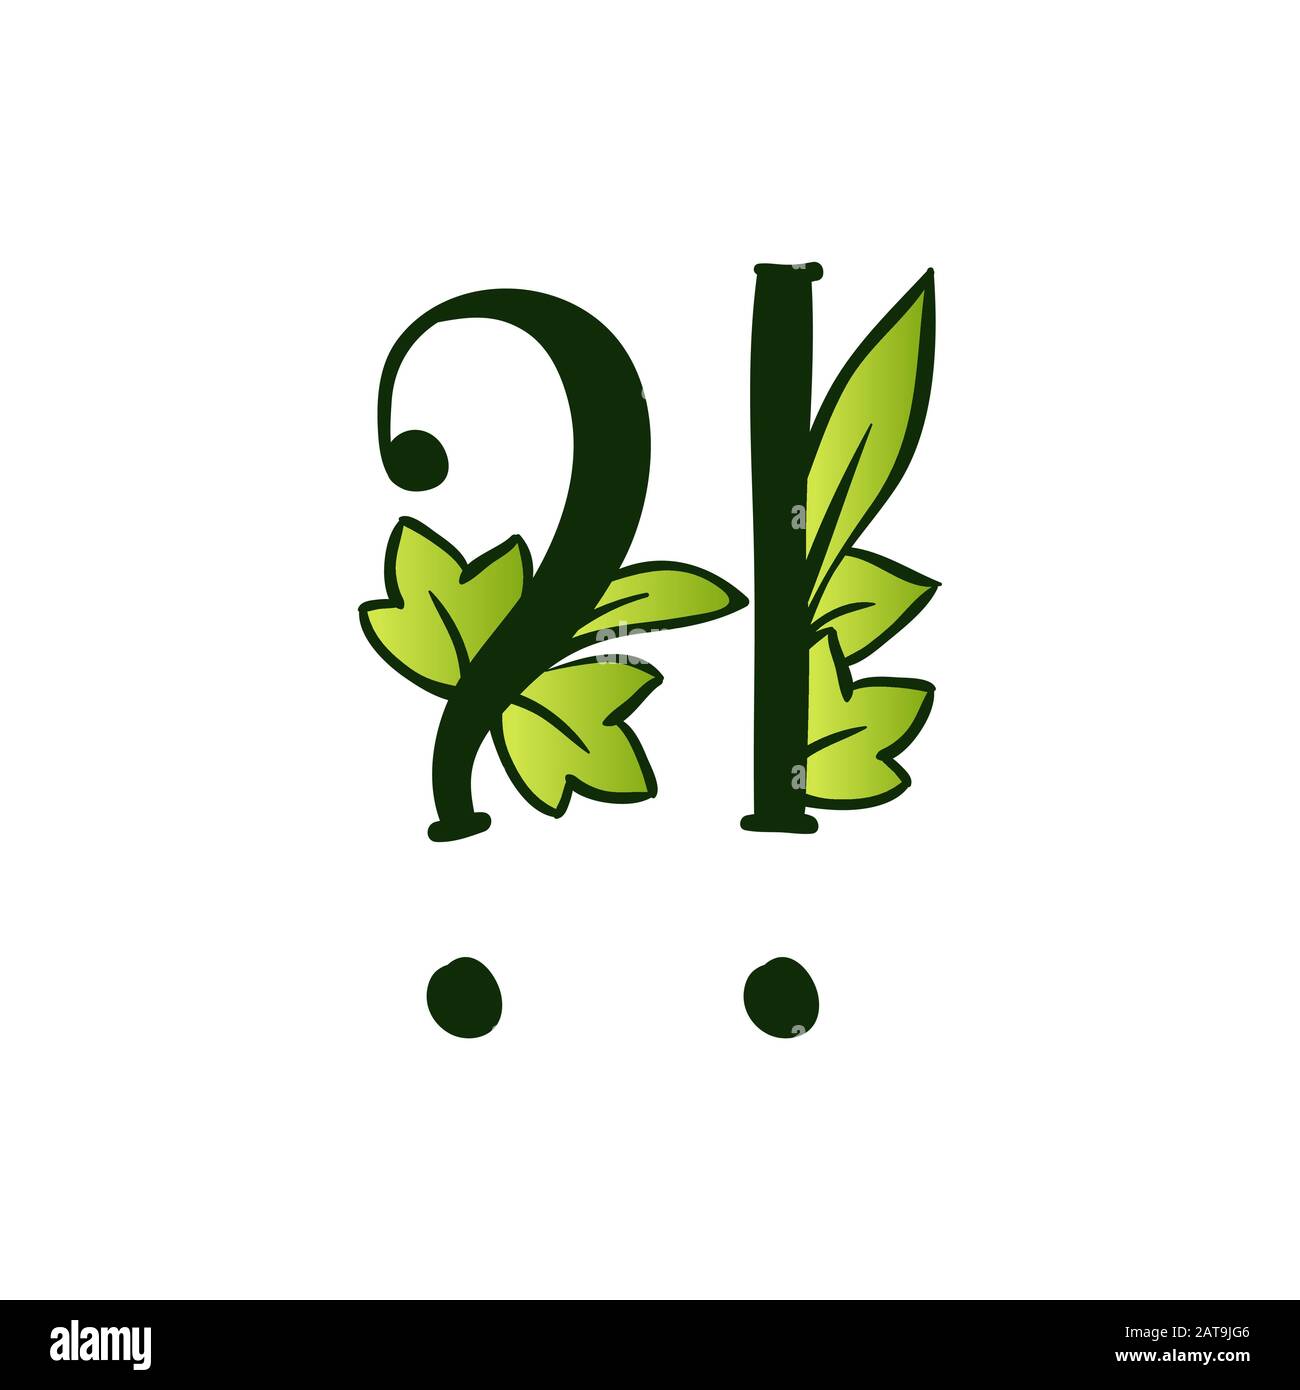 Grün Leuchtend Eco Alphabet Buchstabe Fragezeichen.Typ mit Blättern. Isoliertes Lateinisches Großbuchstaben. Typografie Bold Spring Letter oder Doodle ABC Zeichen für Monogramm-Wörter und Logo. Stock Vektor